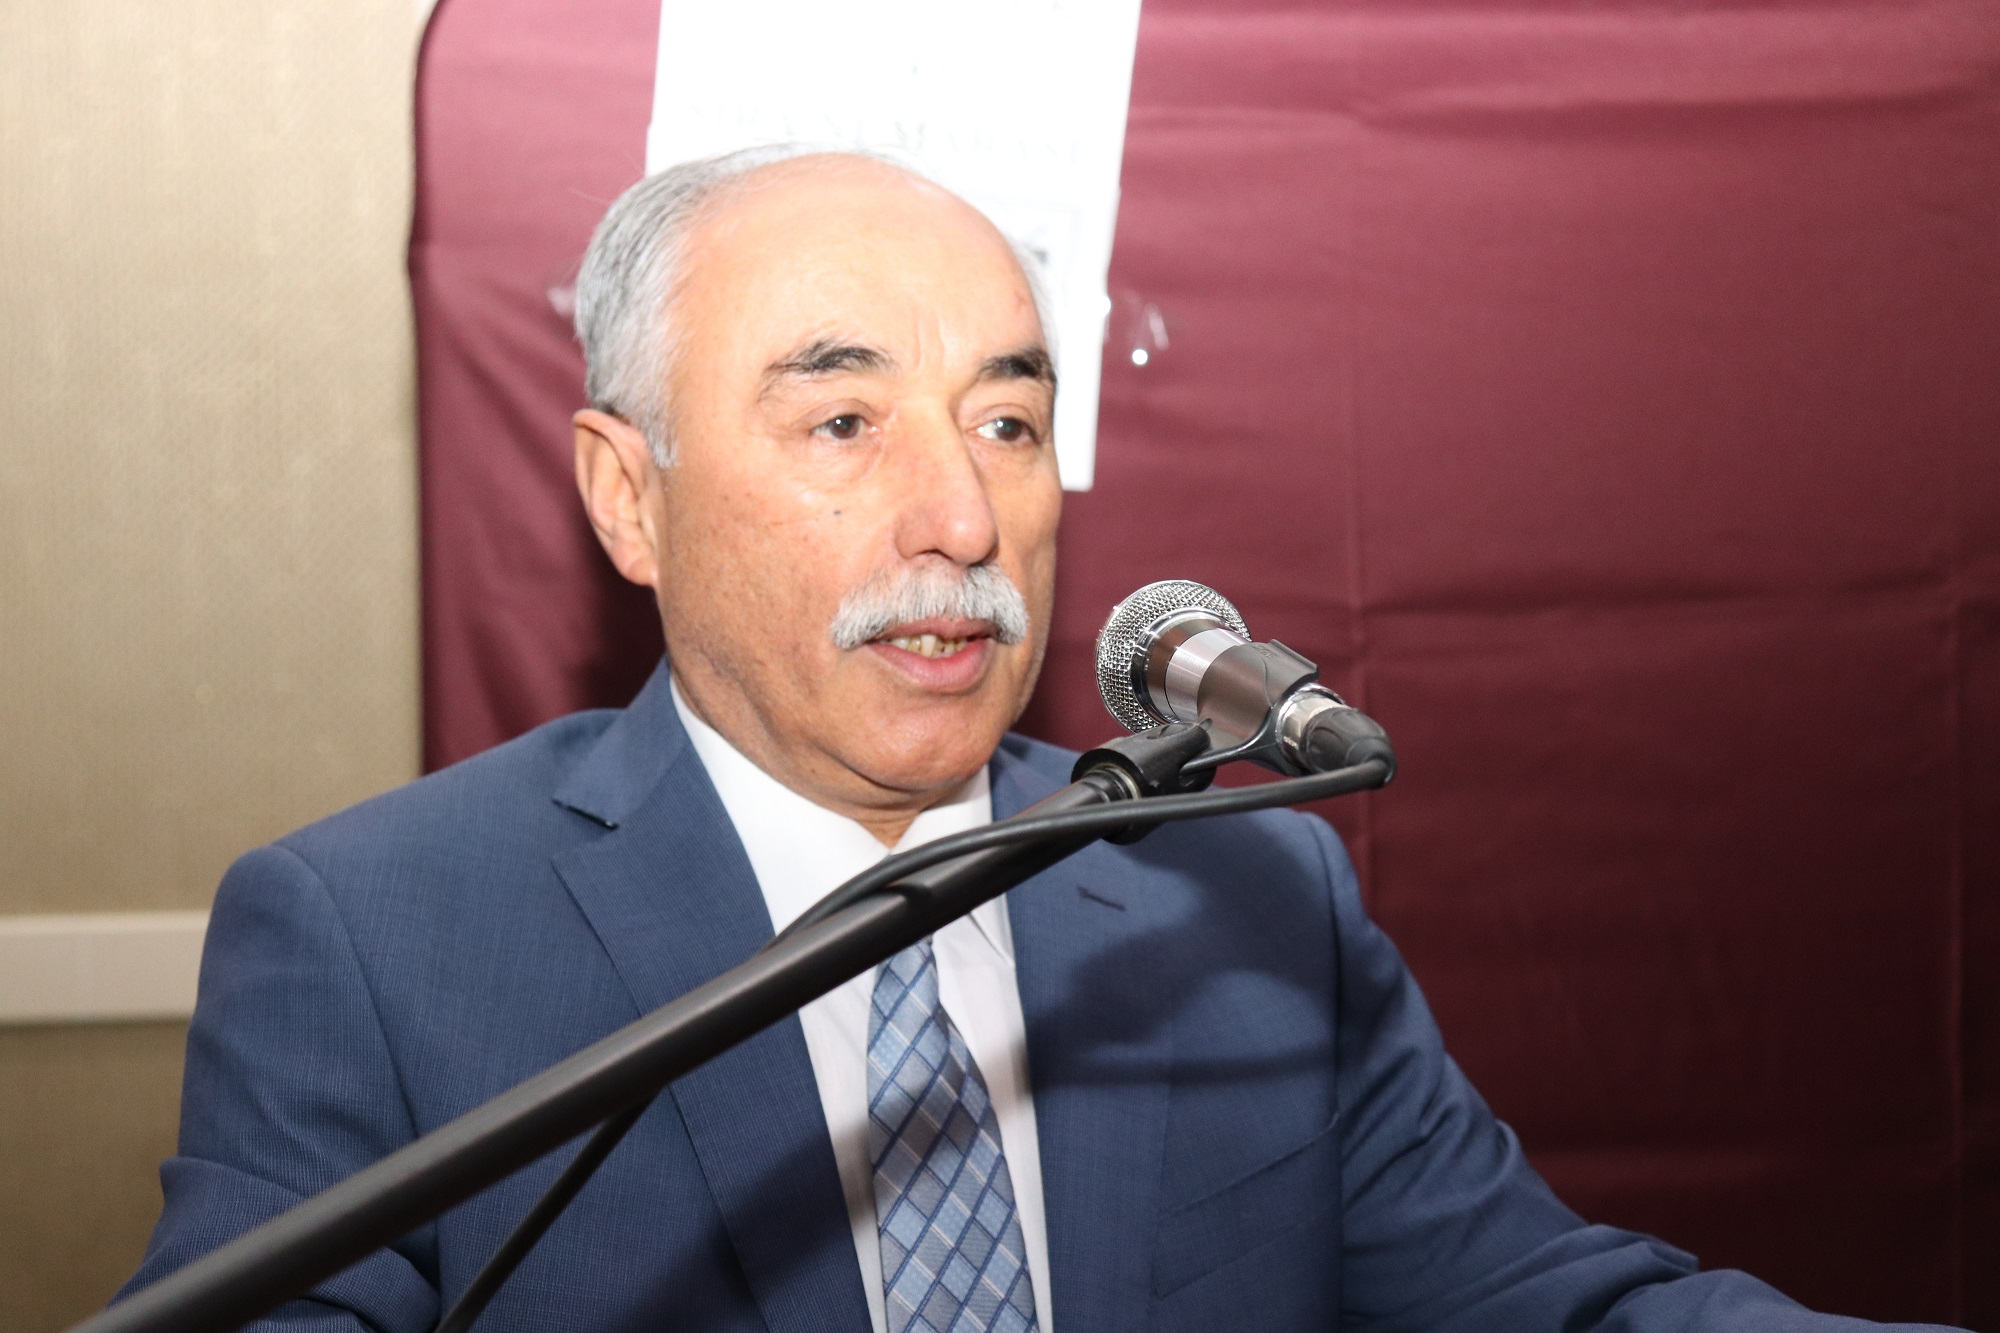 Malatya Kahveciler Odası’nın genel kurulunda 4 kişi başkanlık için aday olurken, seçim sonucunda mevcut başkan Hacı Karanfil, yeniden seçildi.